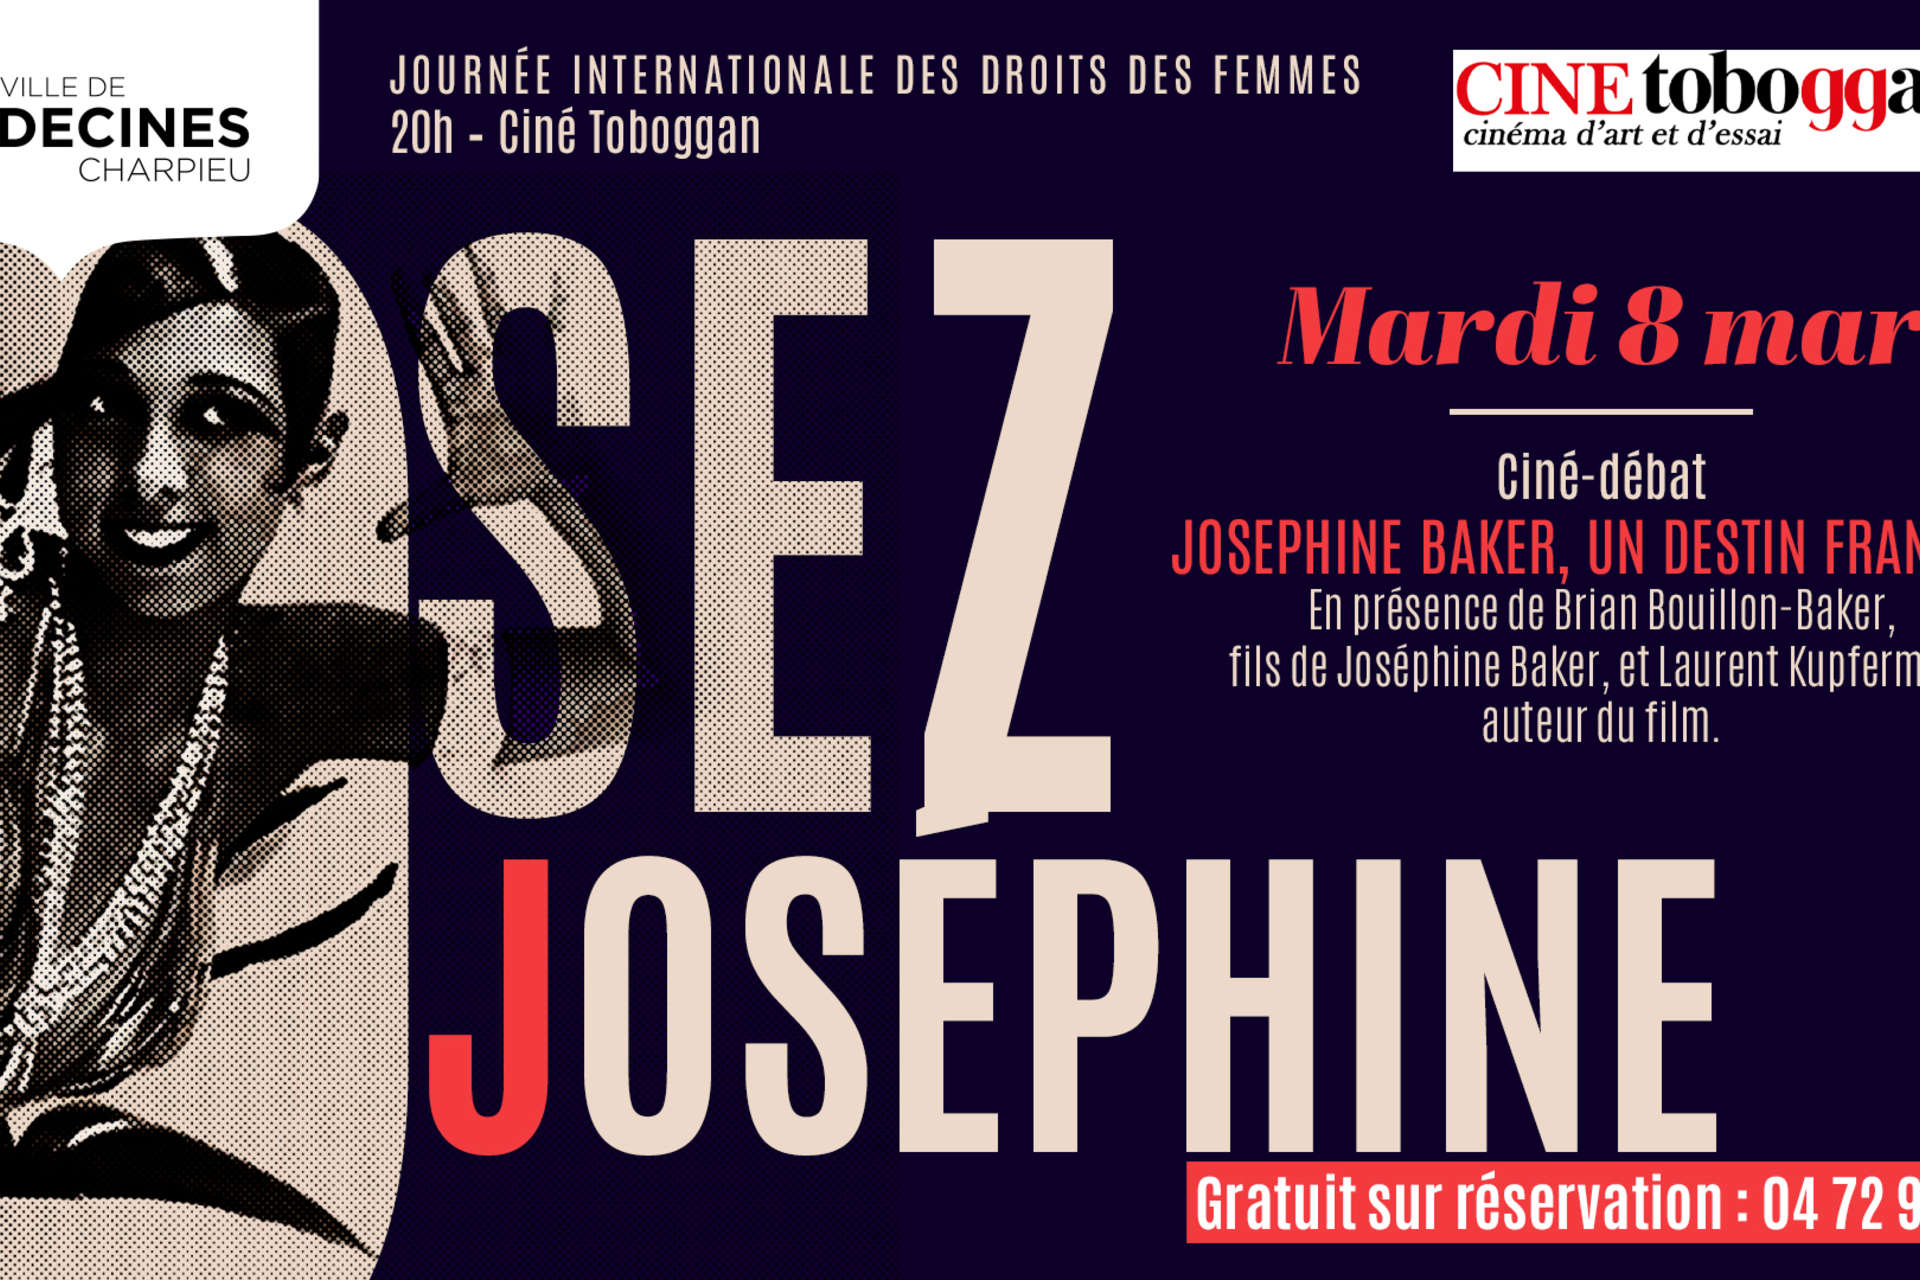 Affiche Ciné Toboggan représentant Josephine Baker à l'occasion d'un cin-débat le 8 mars 2022 à 20h au Toboggan à Décines-Charpieu 